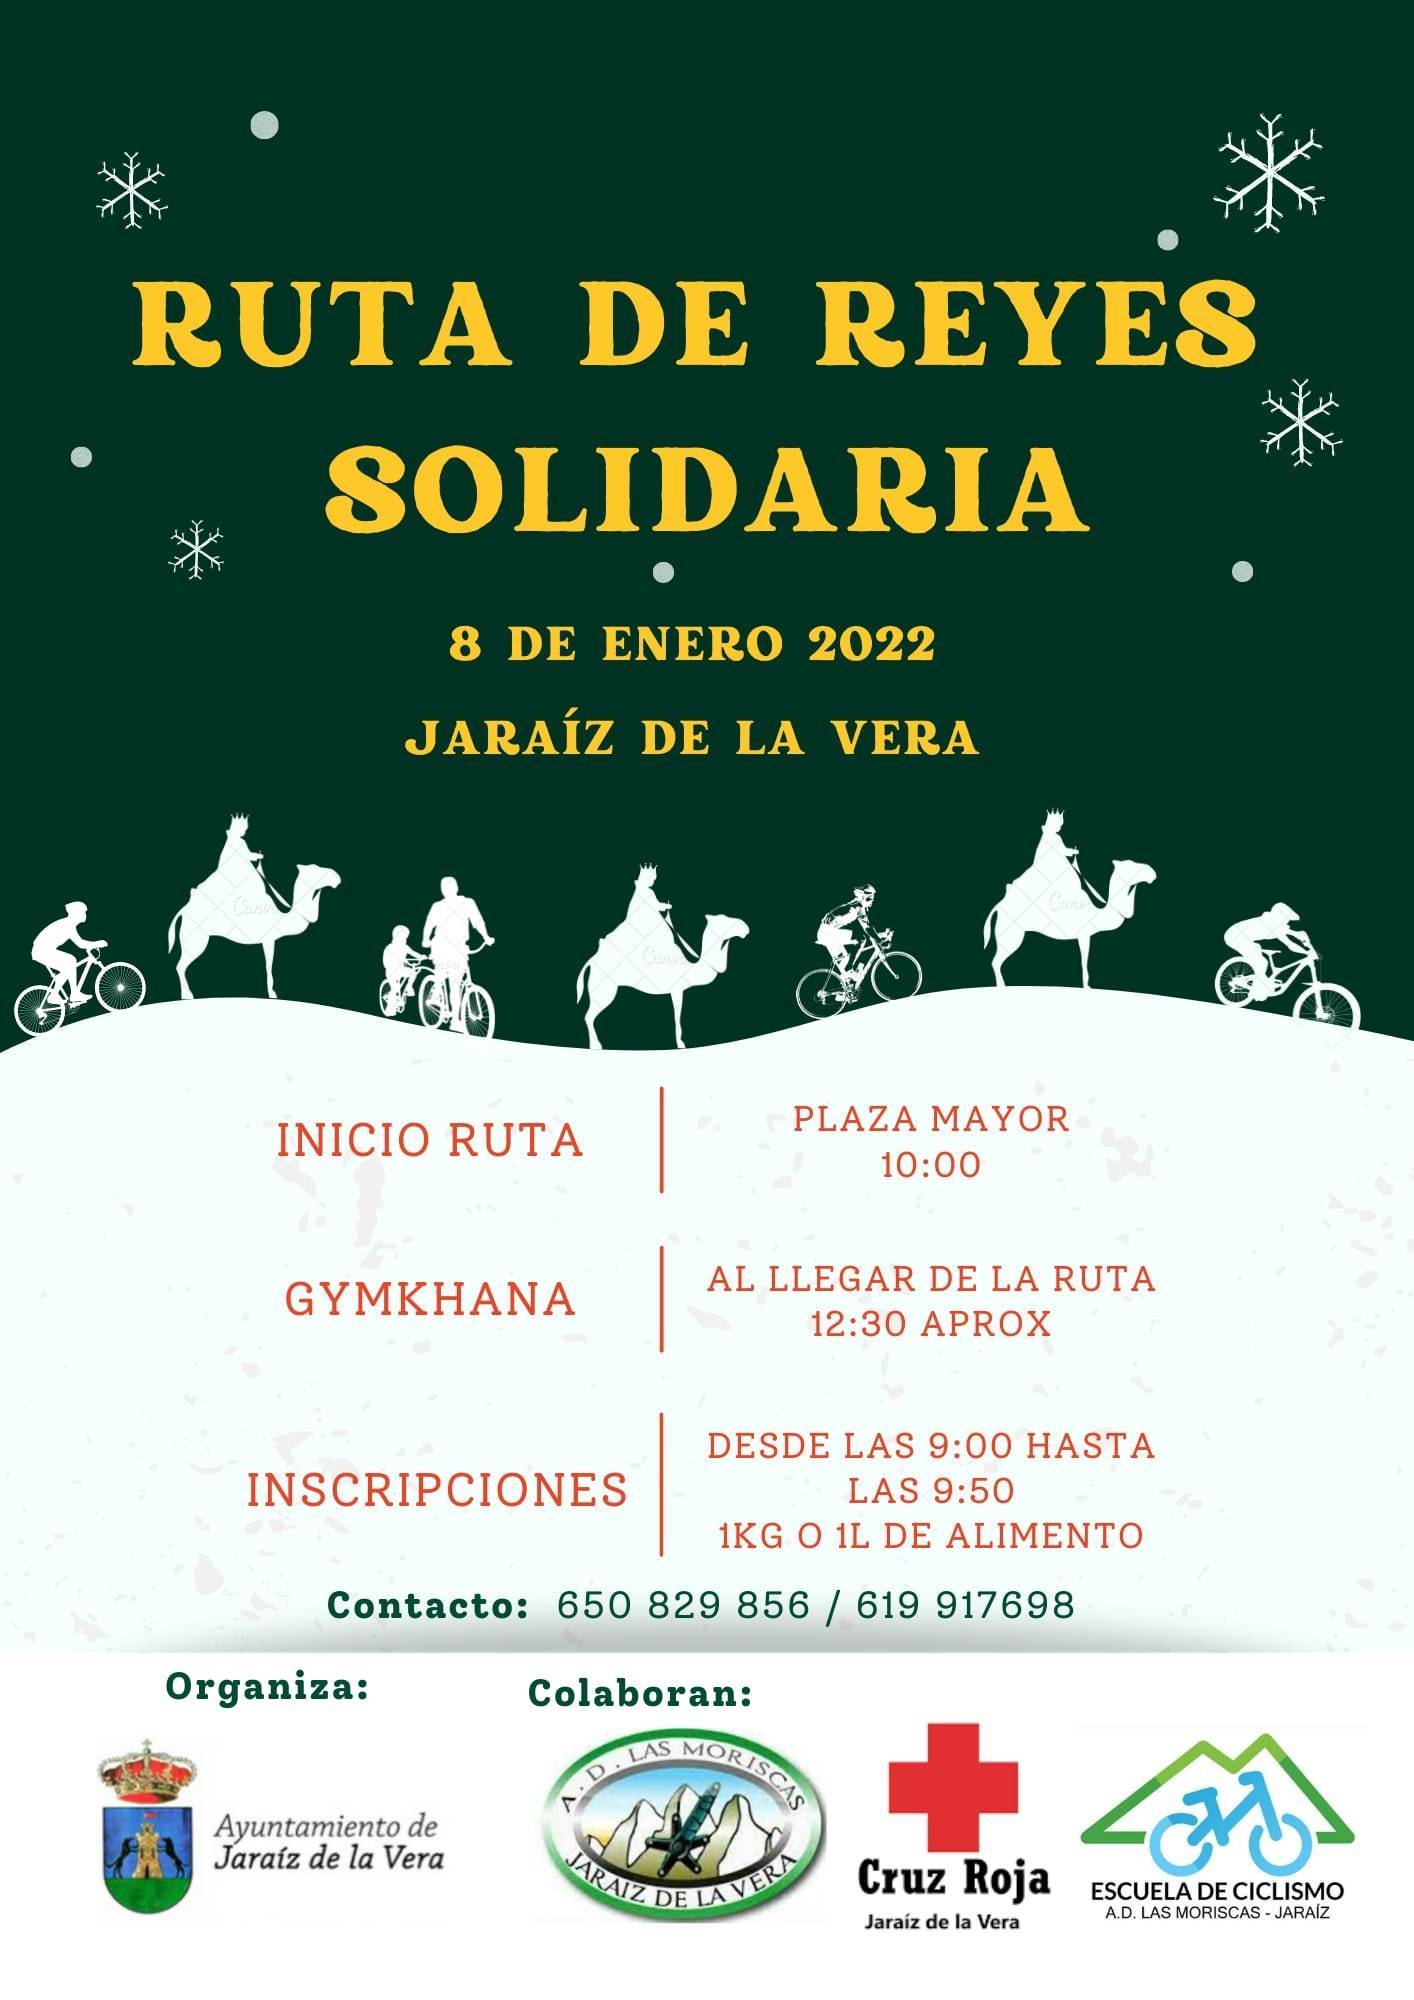 Ruta de Reyes solidaria (2022) - Jaraíz de la Vera (Cáceres)